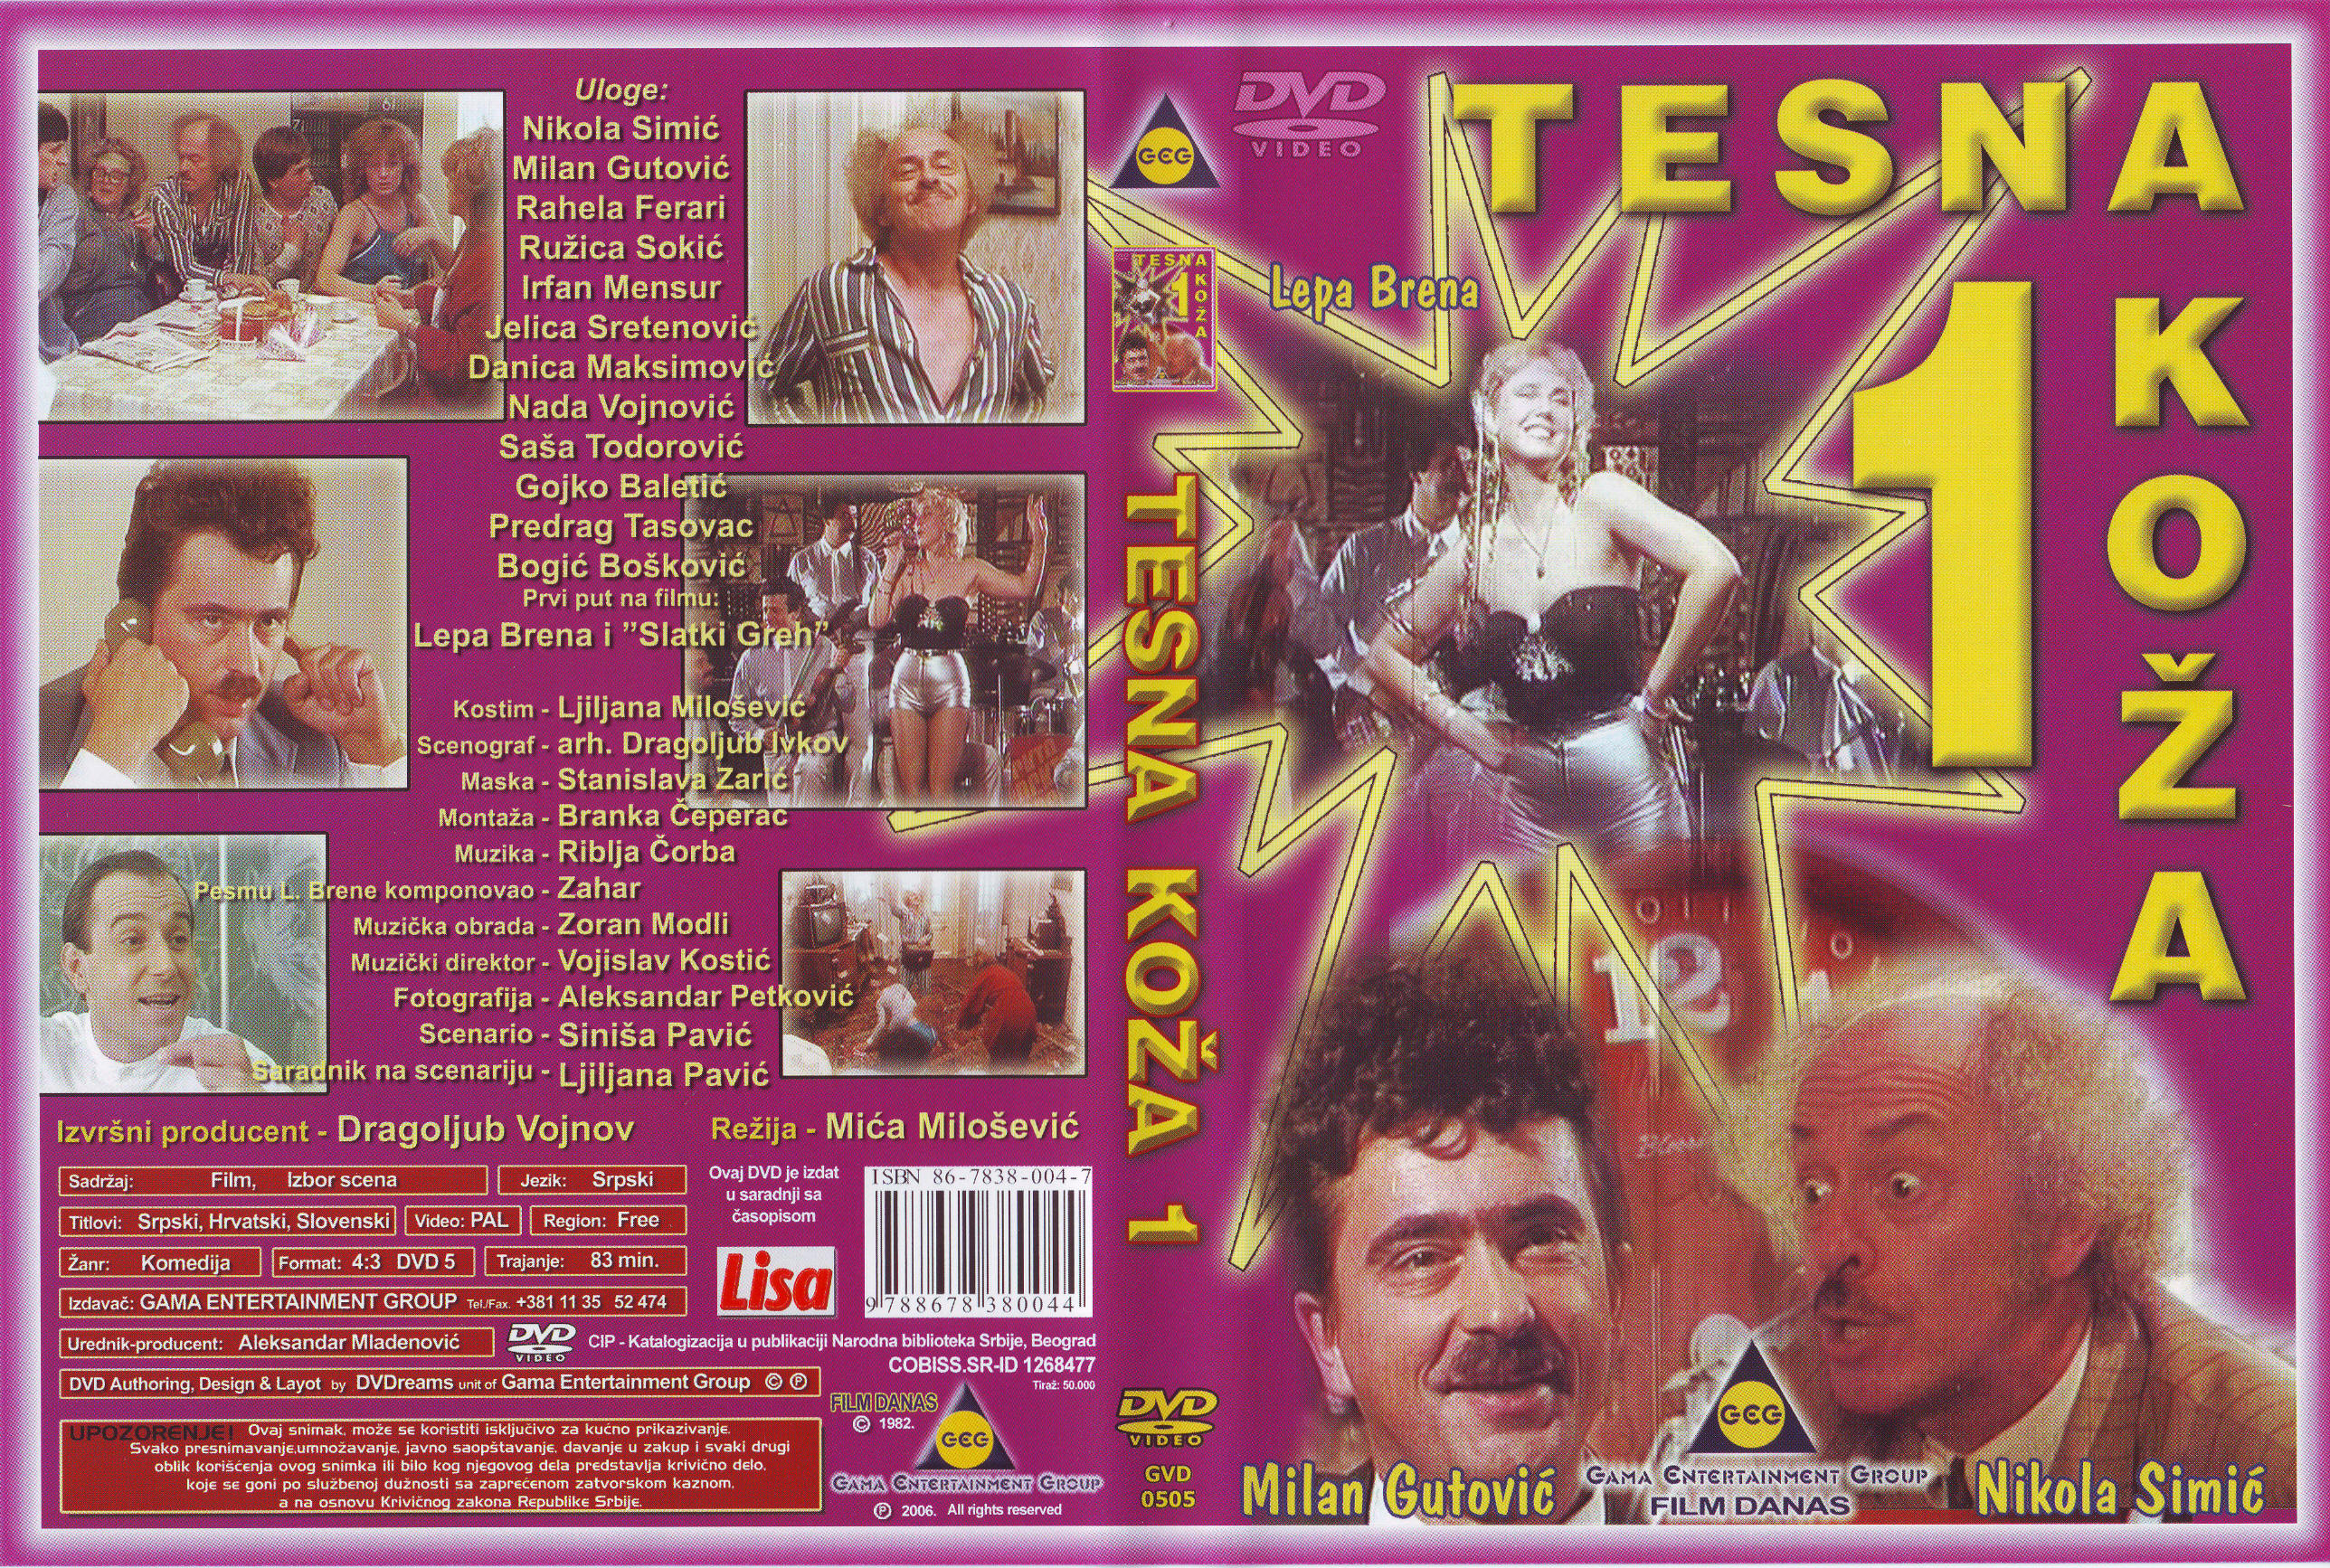 Click to view full size image -  DVD Cover - T - DVD - TESNA KOZA 1 - DVD - TESNA KOZA 1.jpg